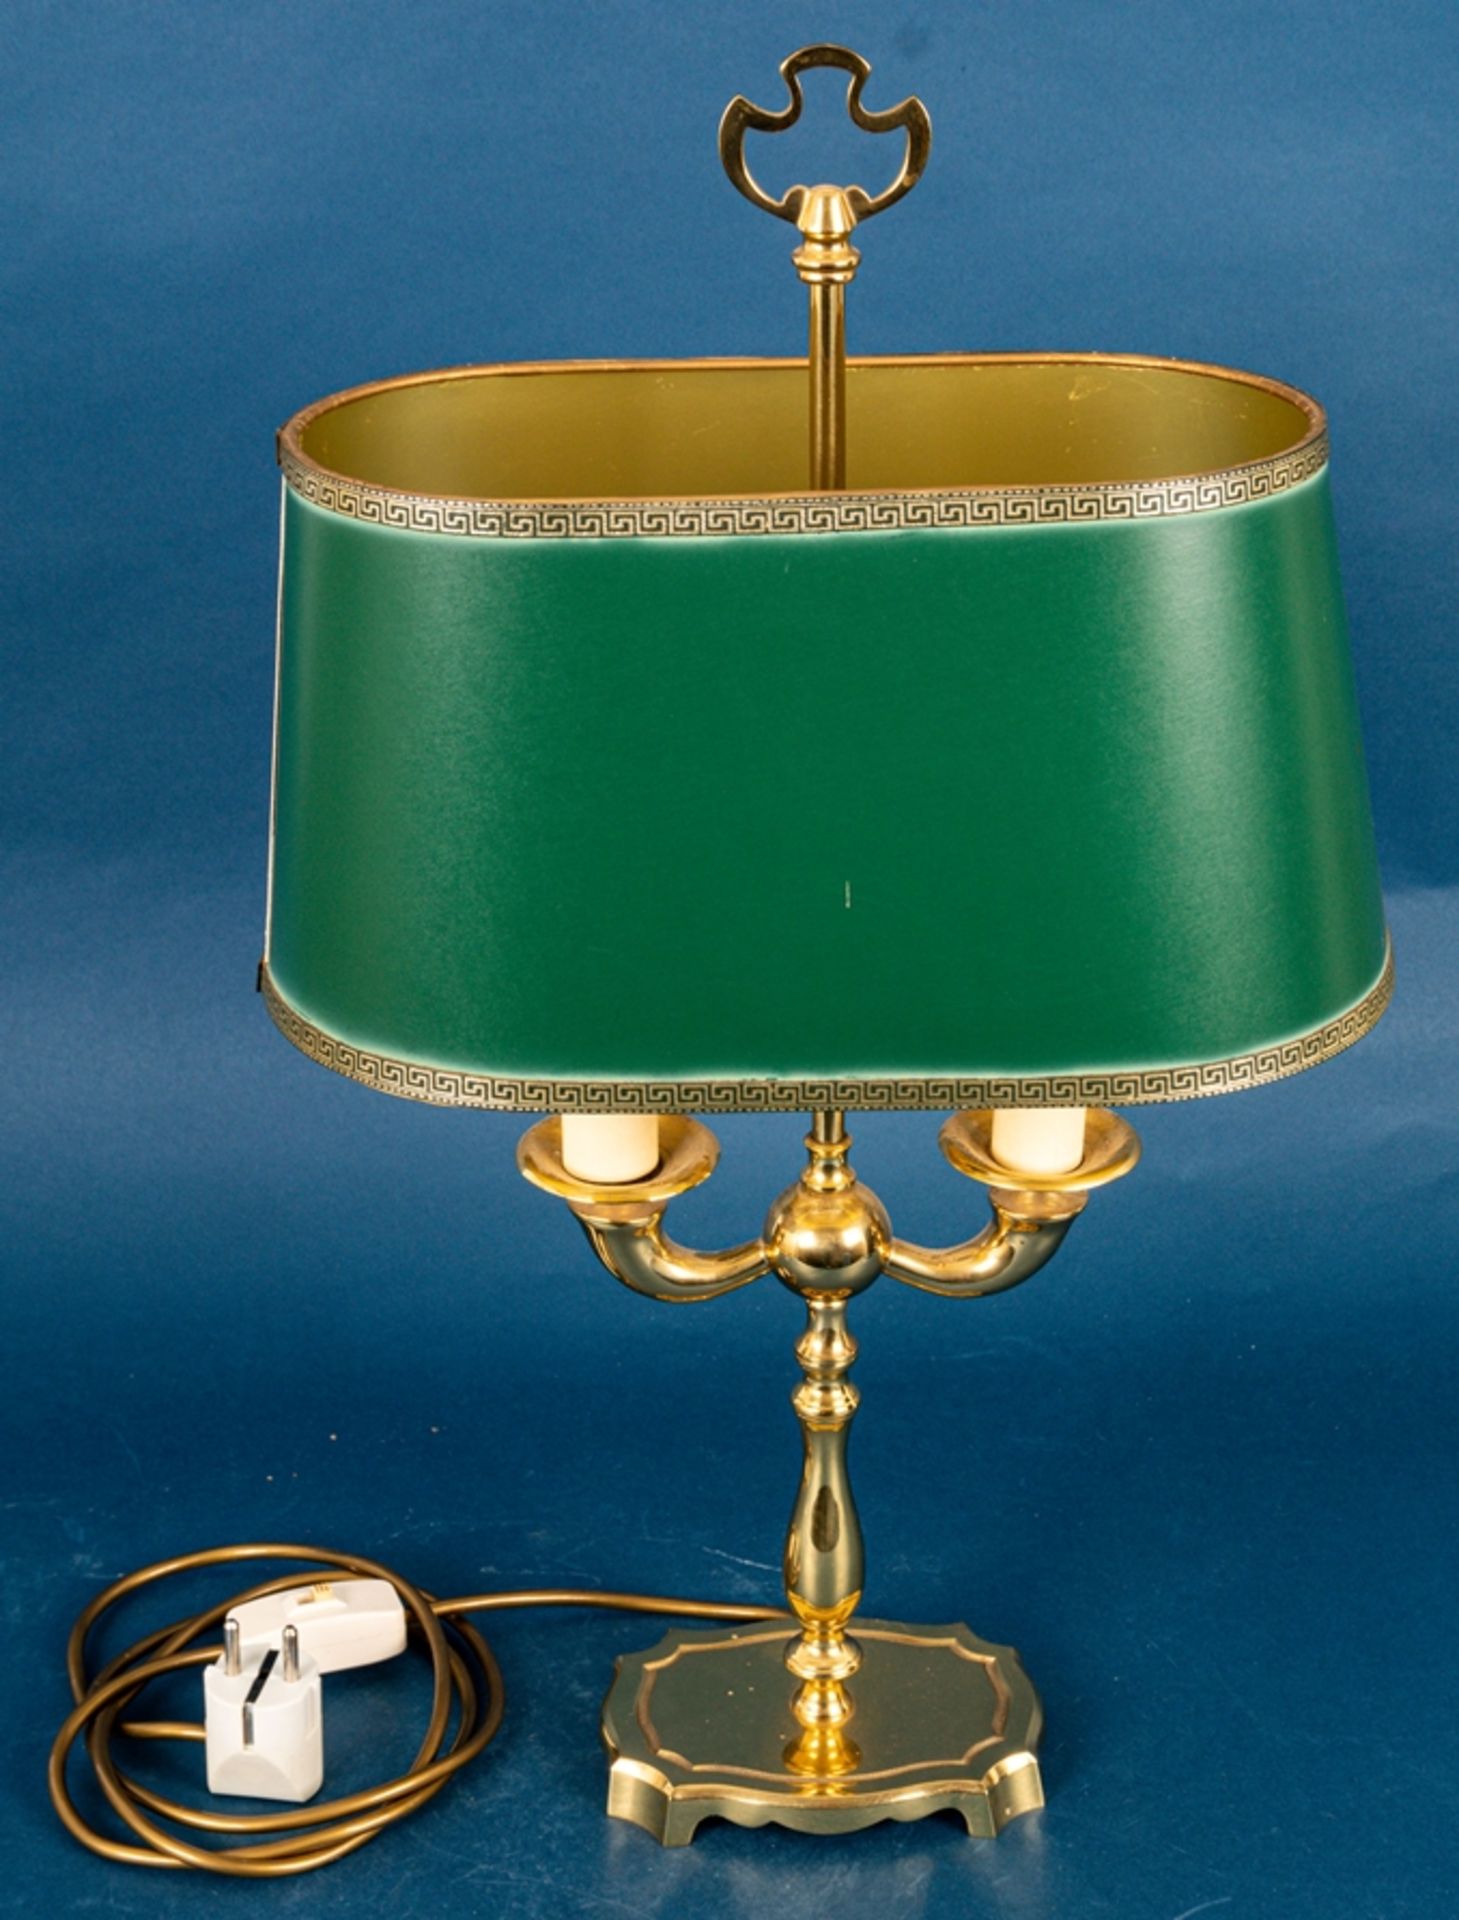 Stilvolle zweiarmige Tischlampe im engl. Stil, Messing, grün-goldener Kunststof - Bild 4 aus 6